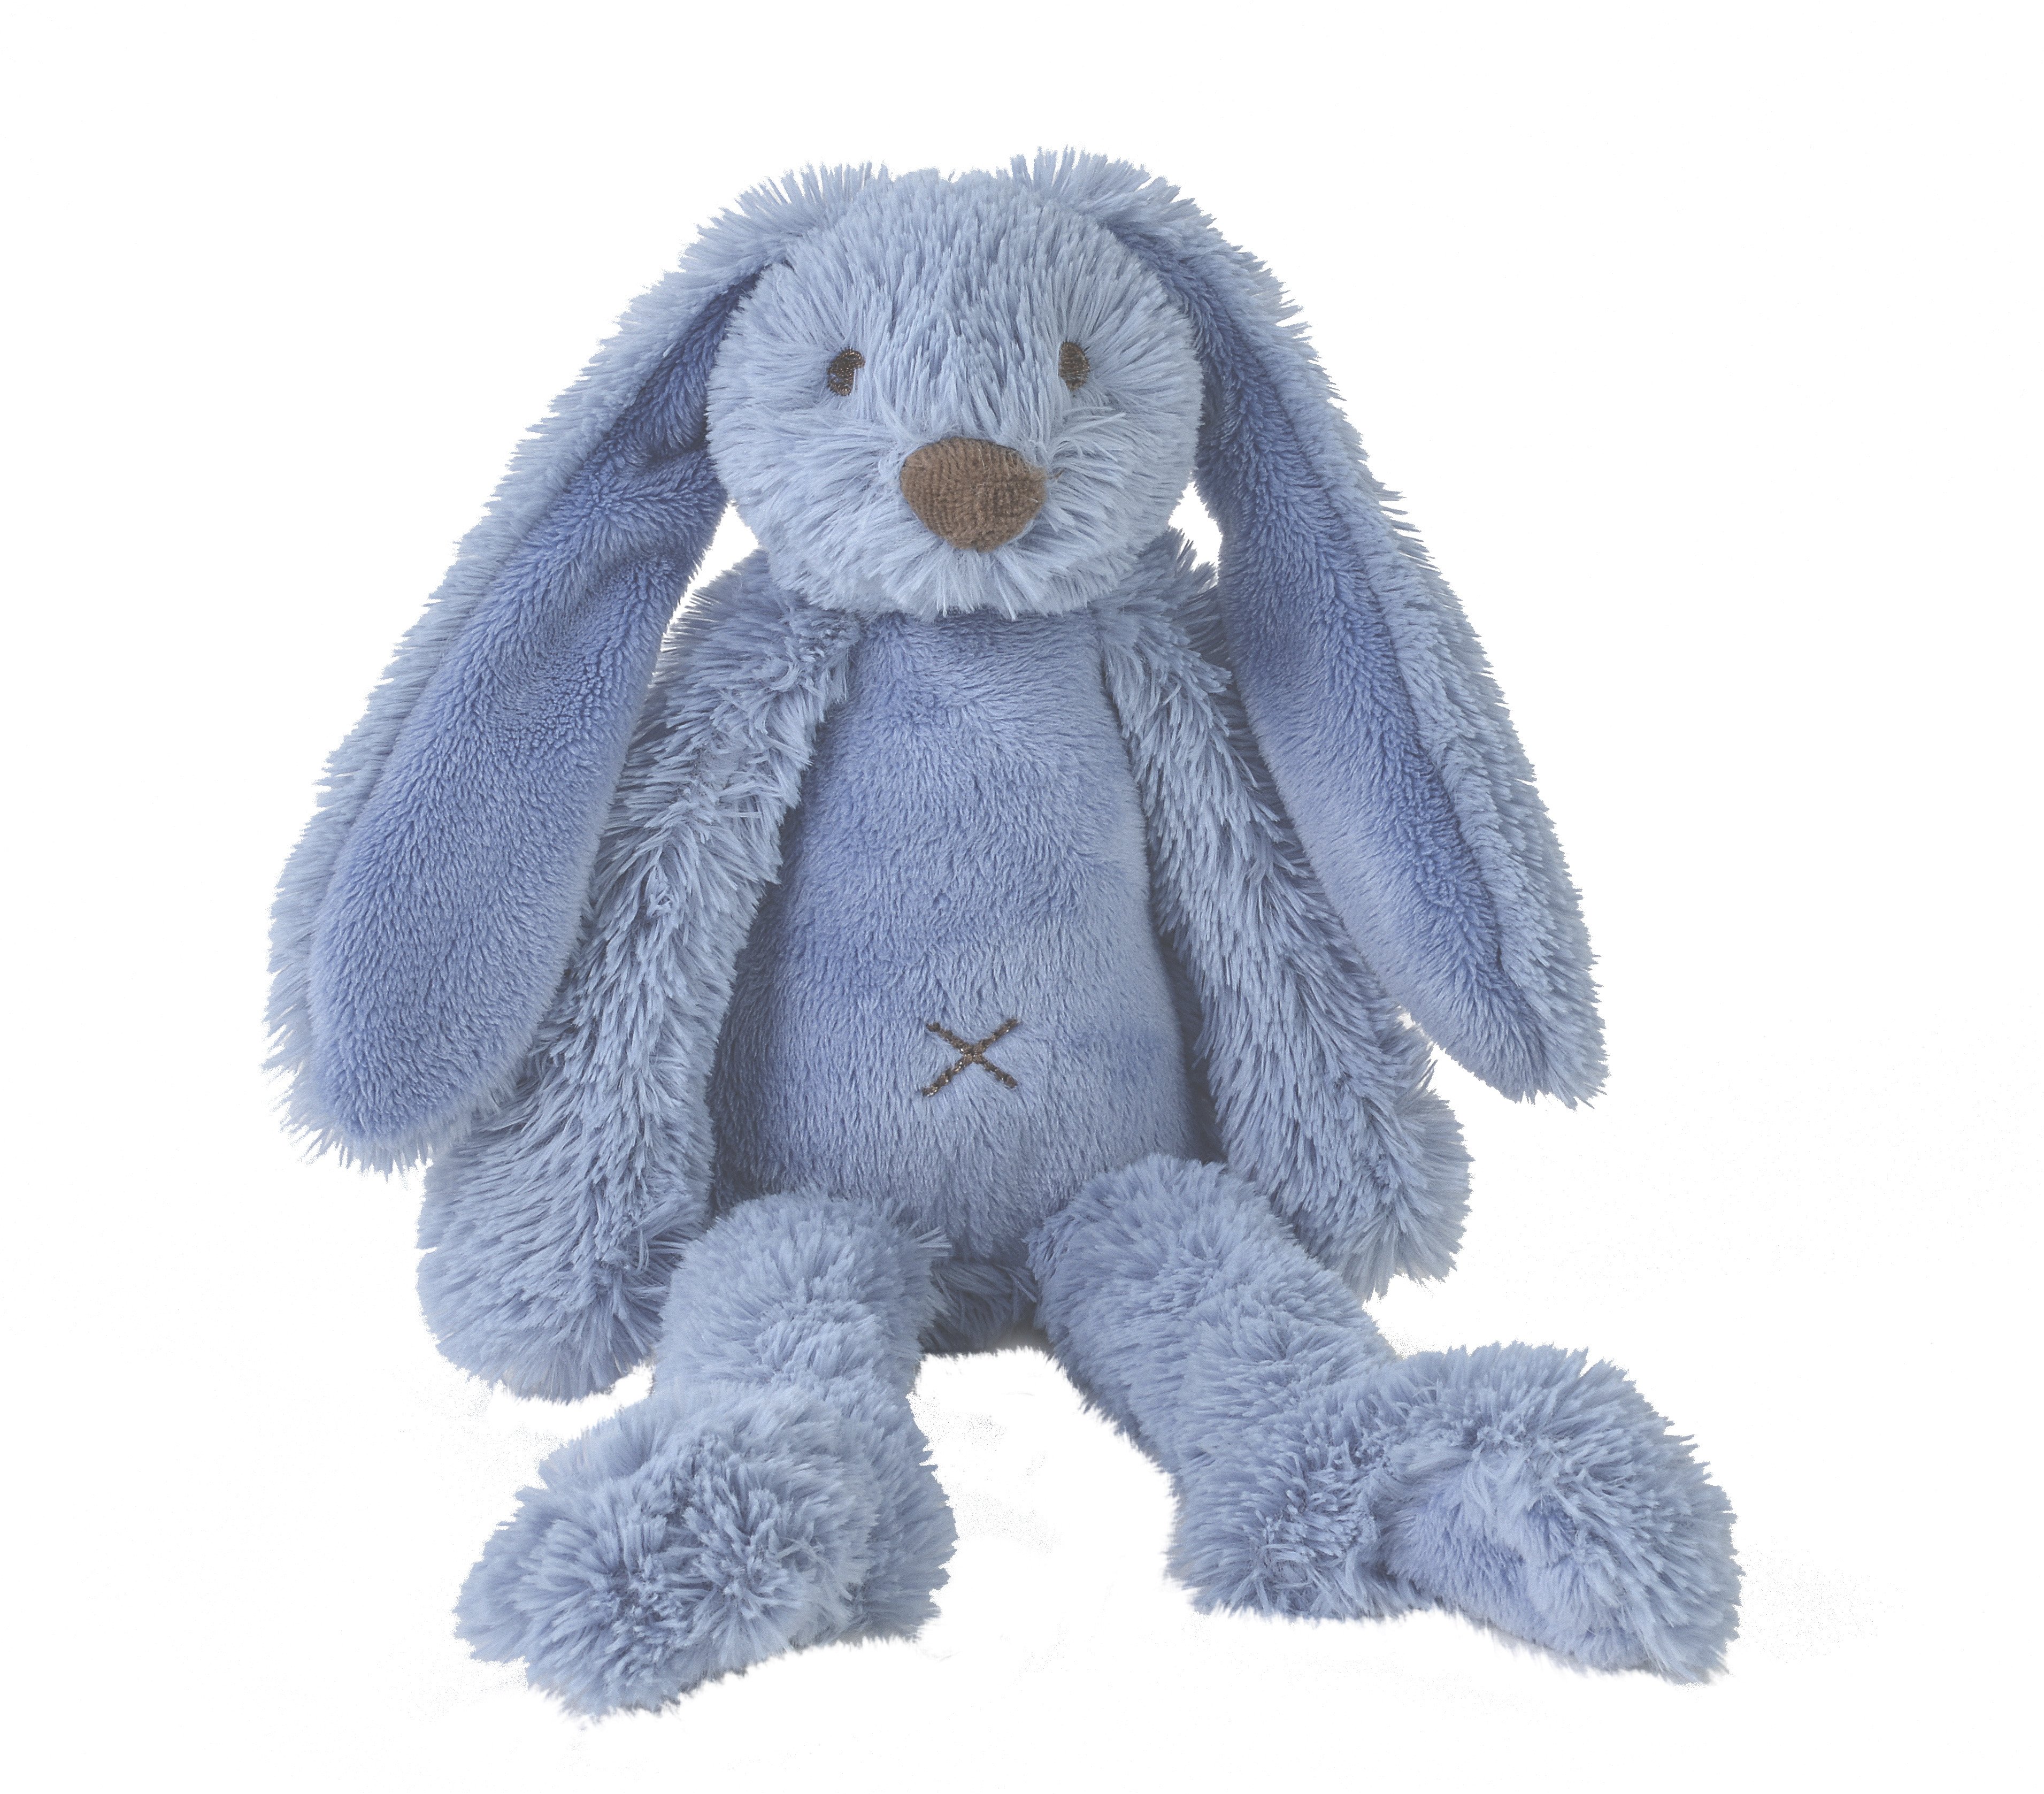 Kaninen Richie fra Happy Horse 38 cm - Deep Blue - med/uden navn